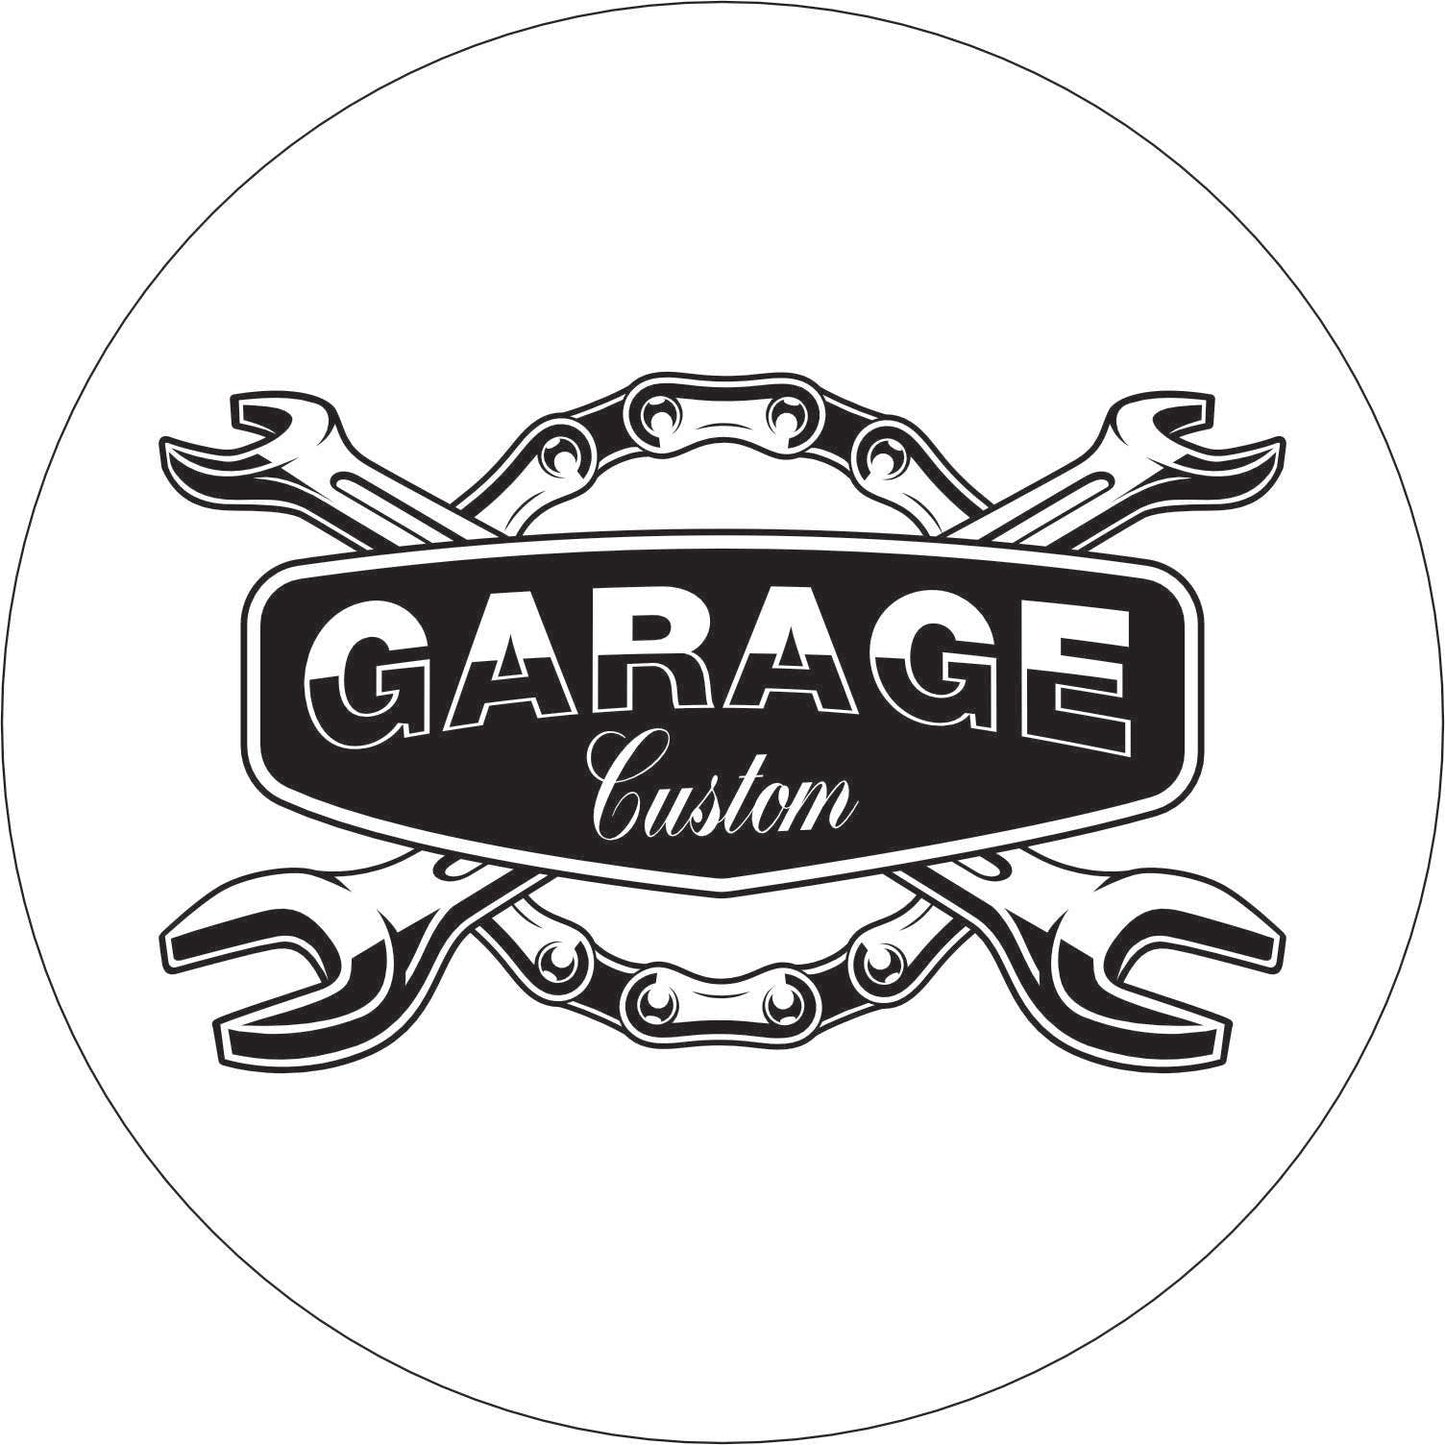 084-Single-sided illuminated sign - Garage